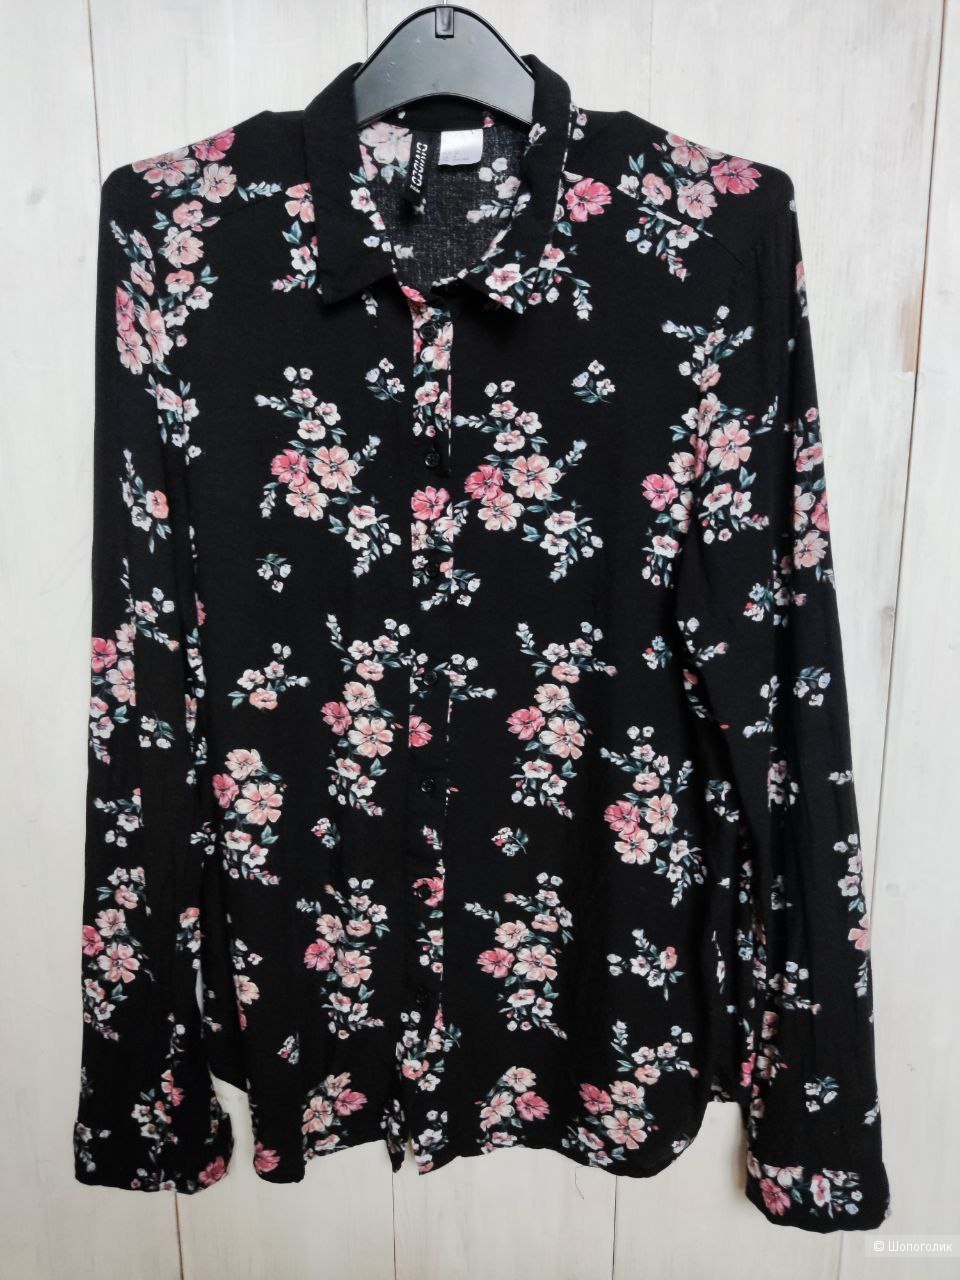 Рубашки сетом HM, Zara (5 шт.)